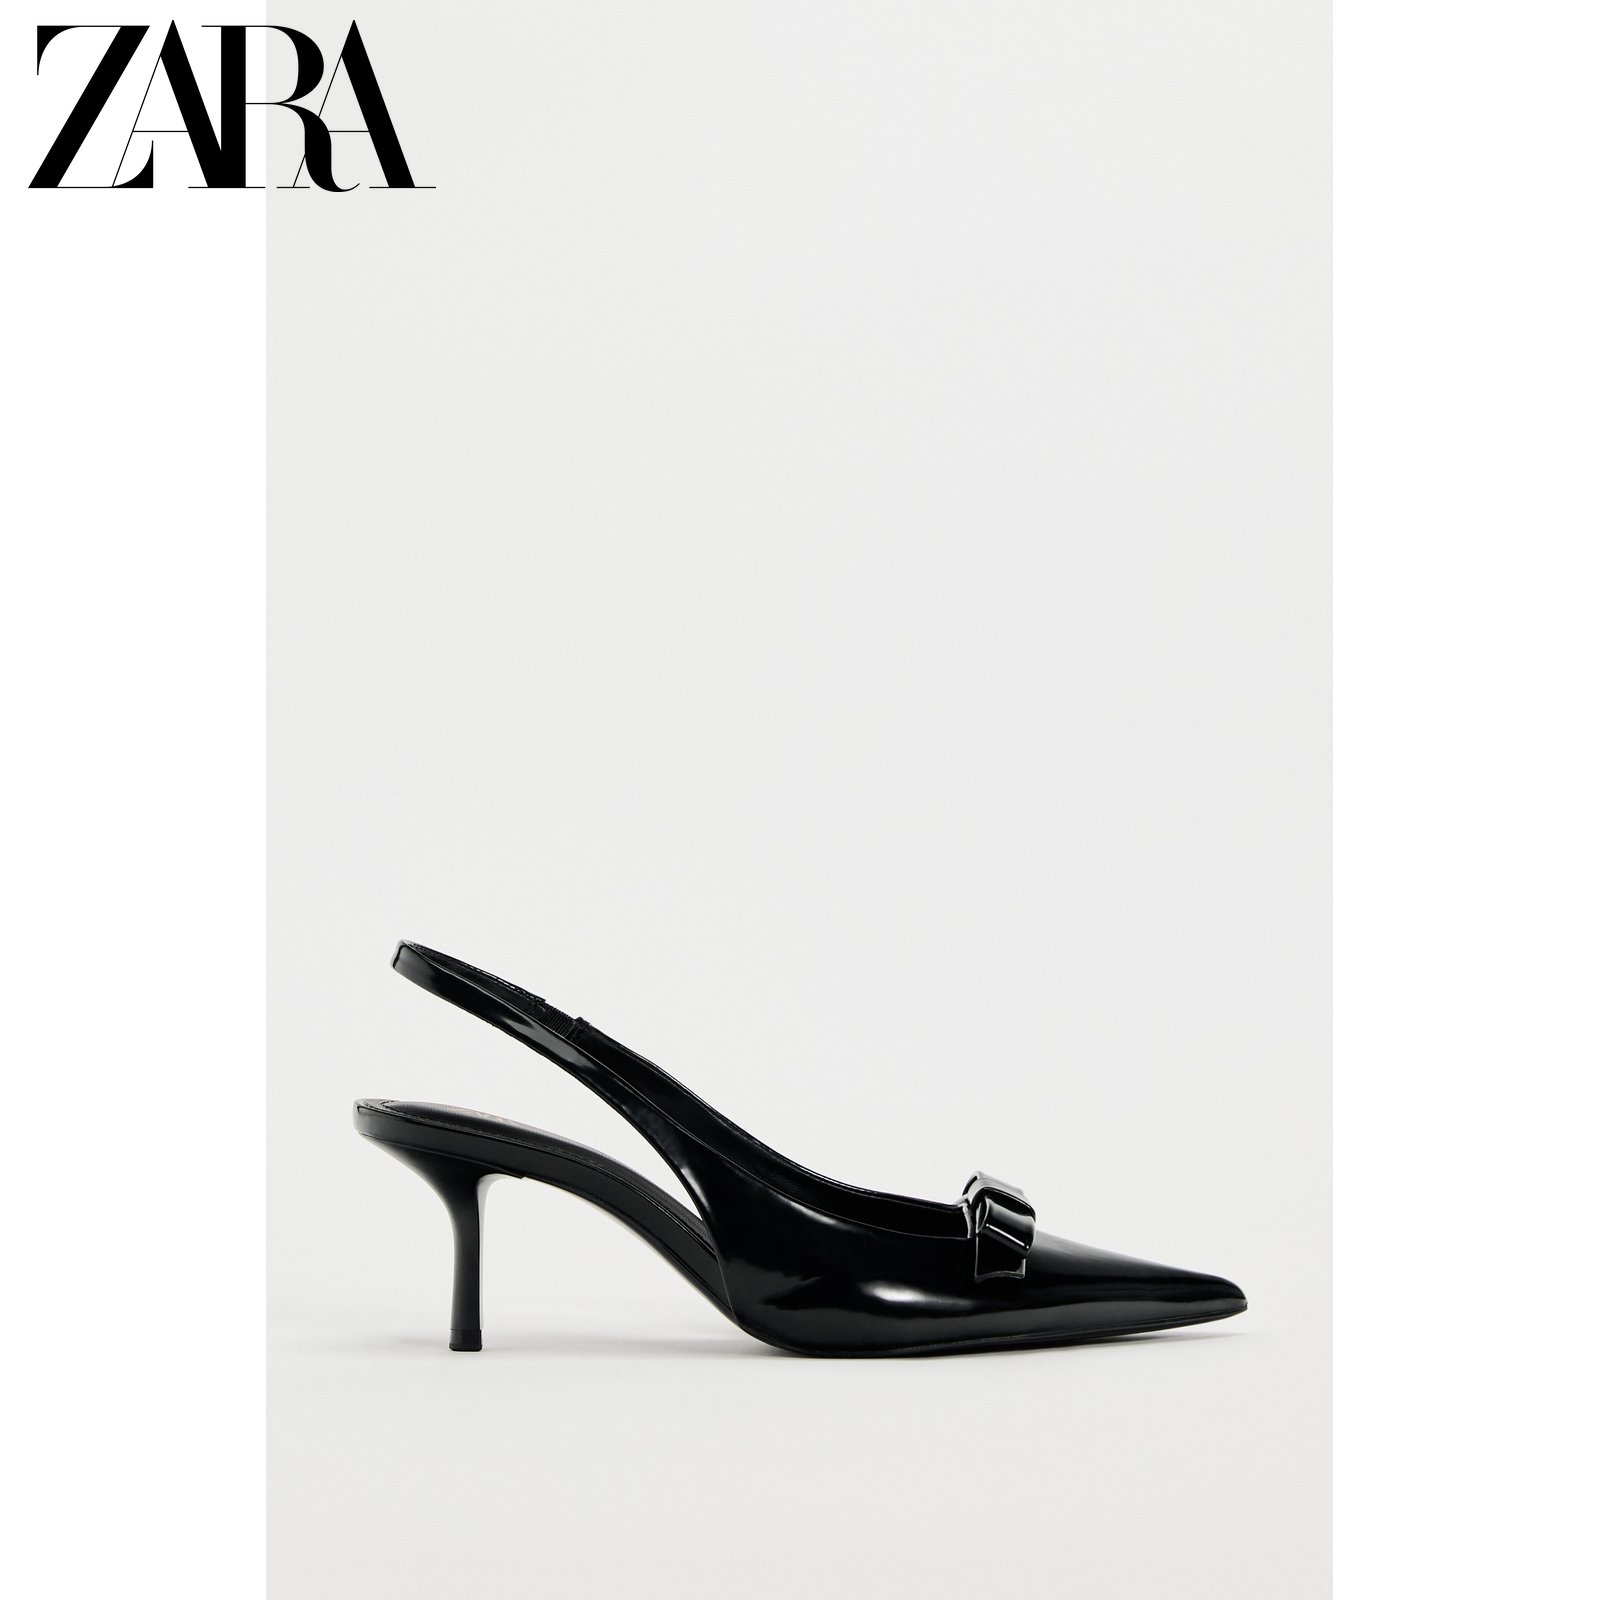 ZARA 春の新作婦人靴 パテントレザー リボン飾り ポインテッドトゥ スリングバック ミュール ハイヒール 2265310 800